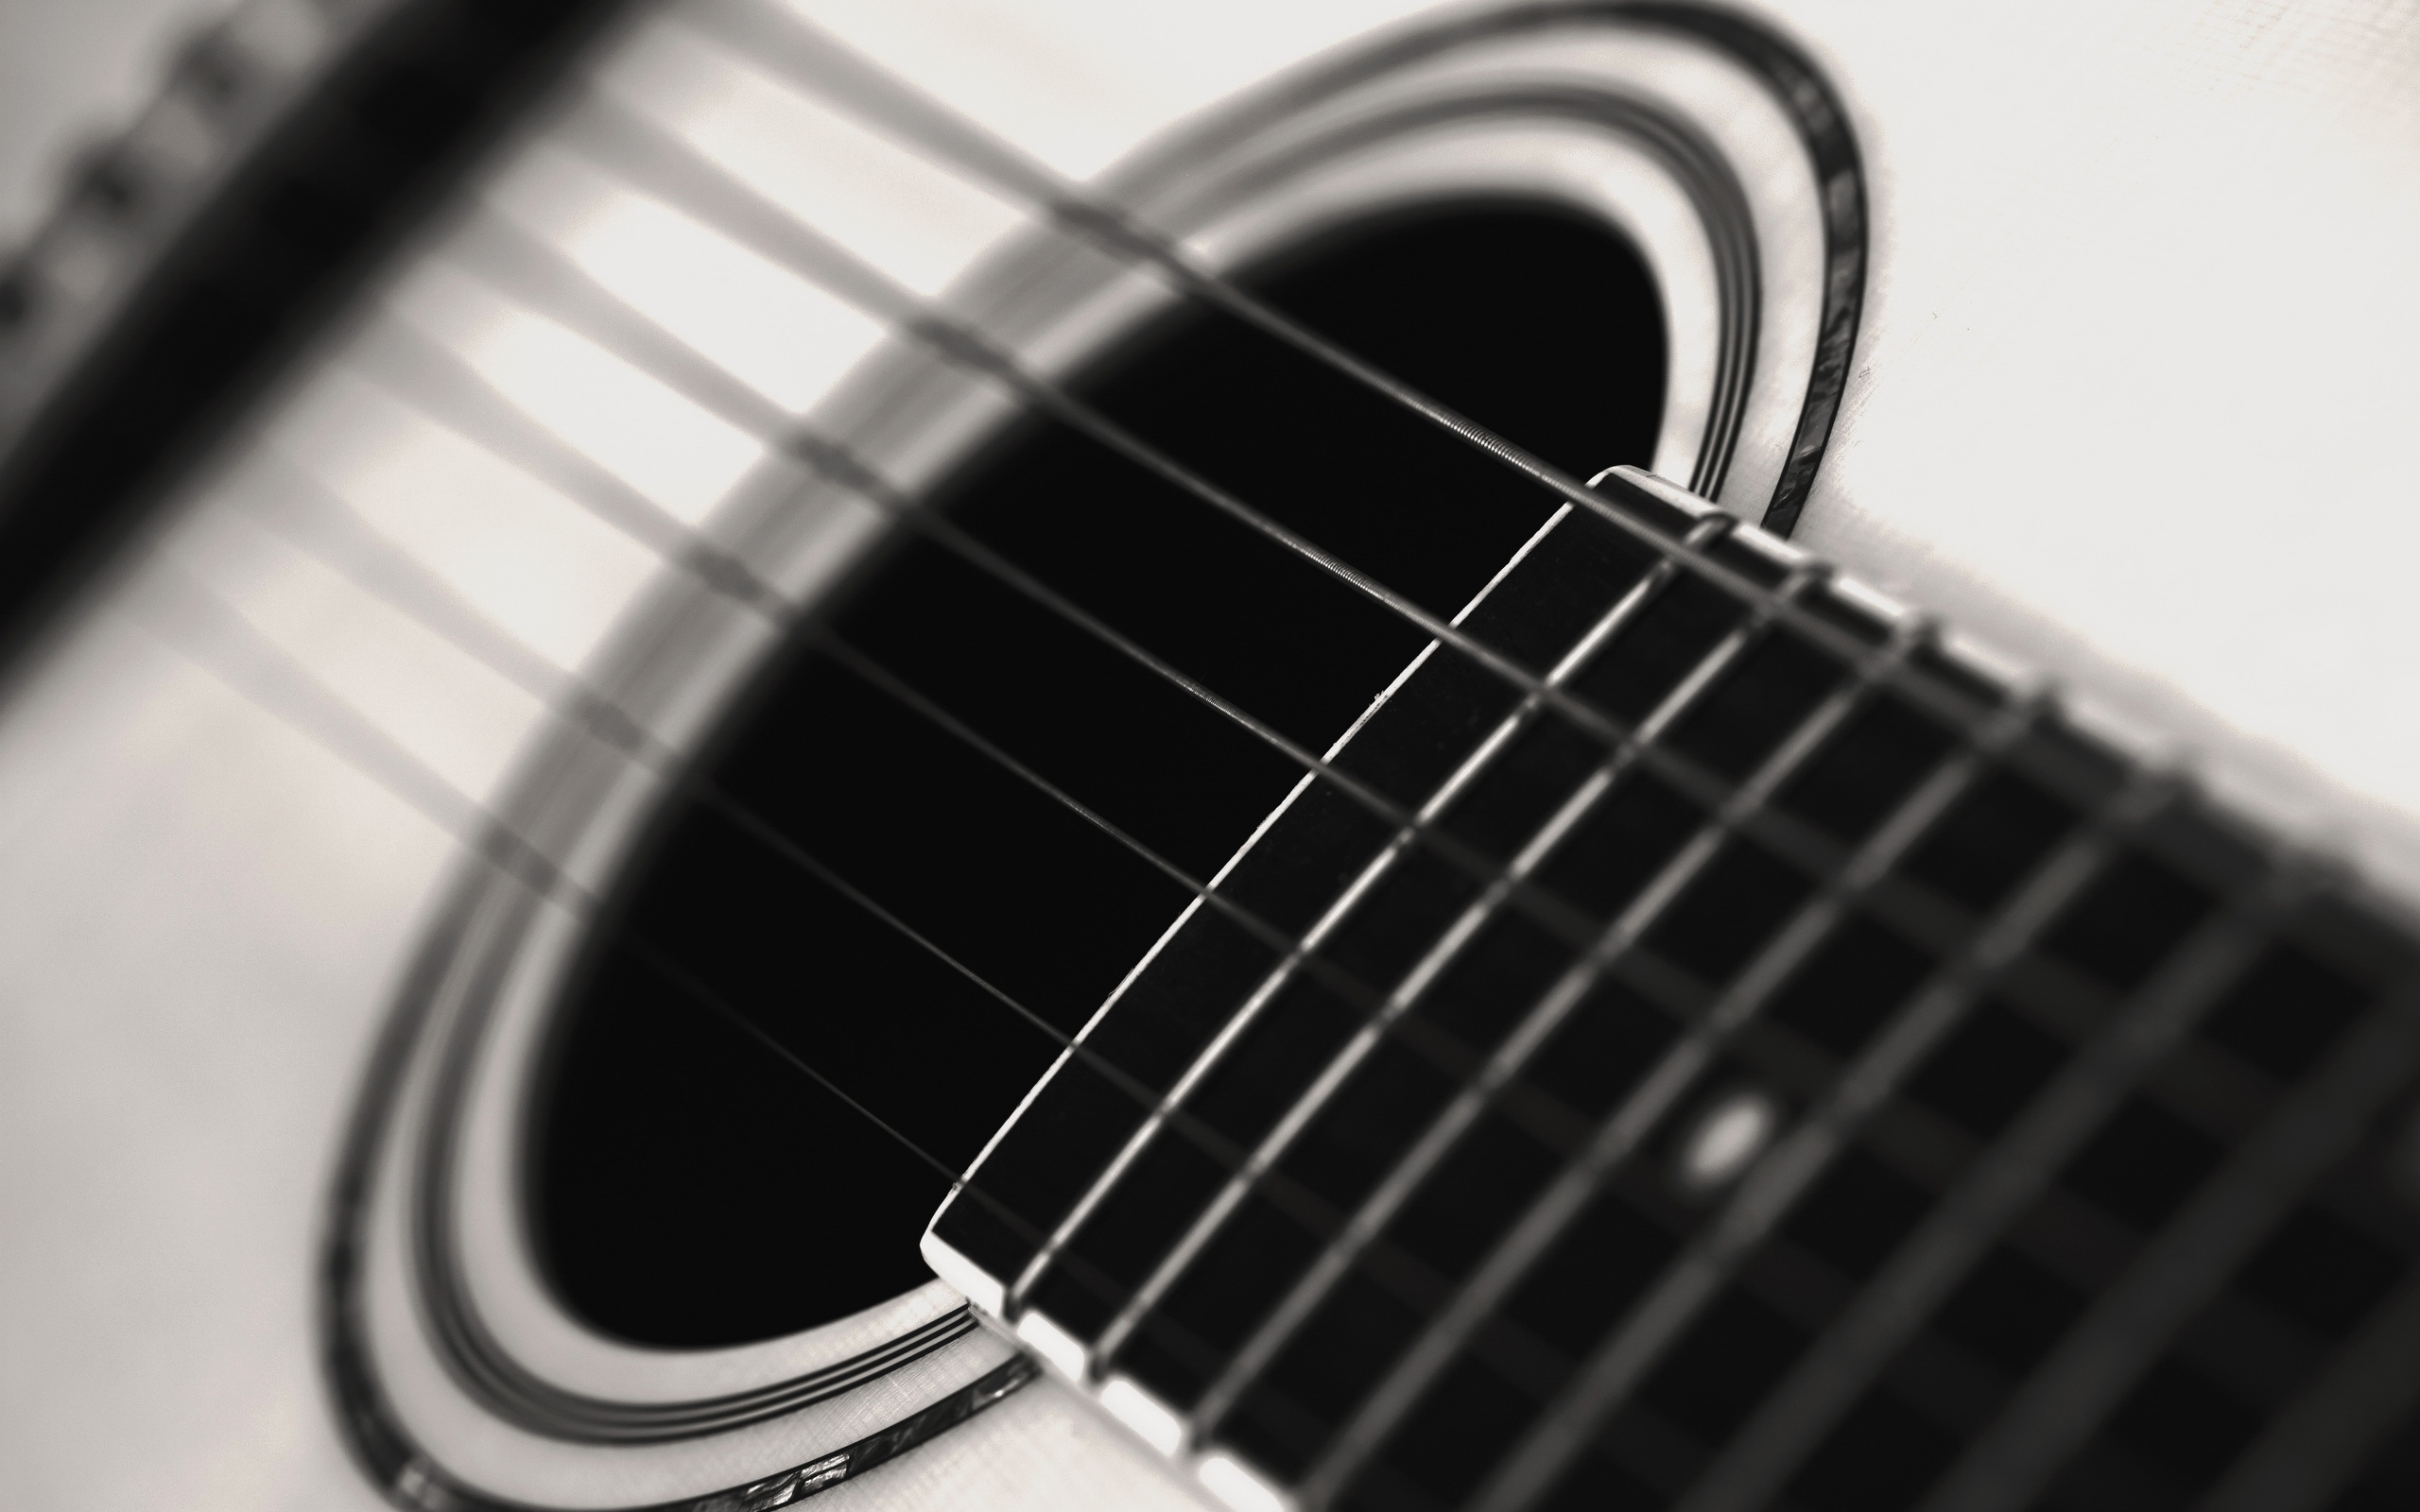 fond d'écran gitarre,guitare,guitare acoustique,instruments à cordes pincées,instrument de musique,accessoire instrument à cordes